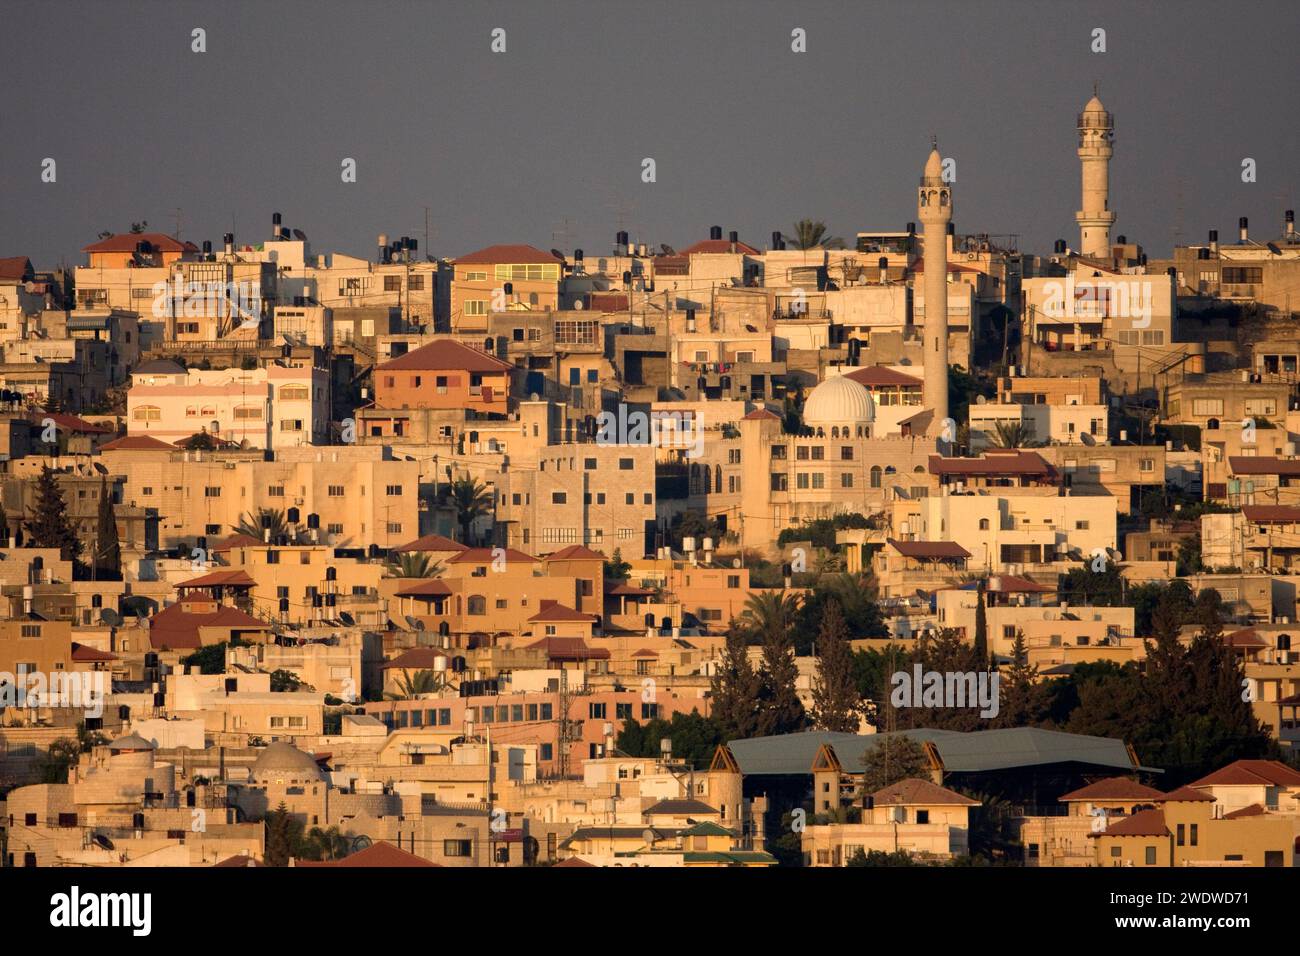 Baqa al-Gharbiyye (Baka al-Gharbiyye arabisch: باقة الغربية, lit. West Baqa) ist eine überwiegend arabische Stadt in der Dreiecksregion Israels nahe Th Stockfoto